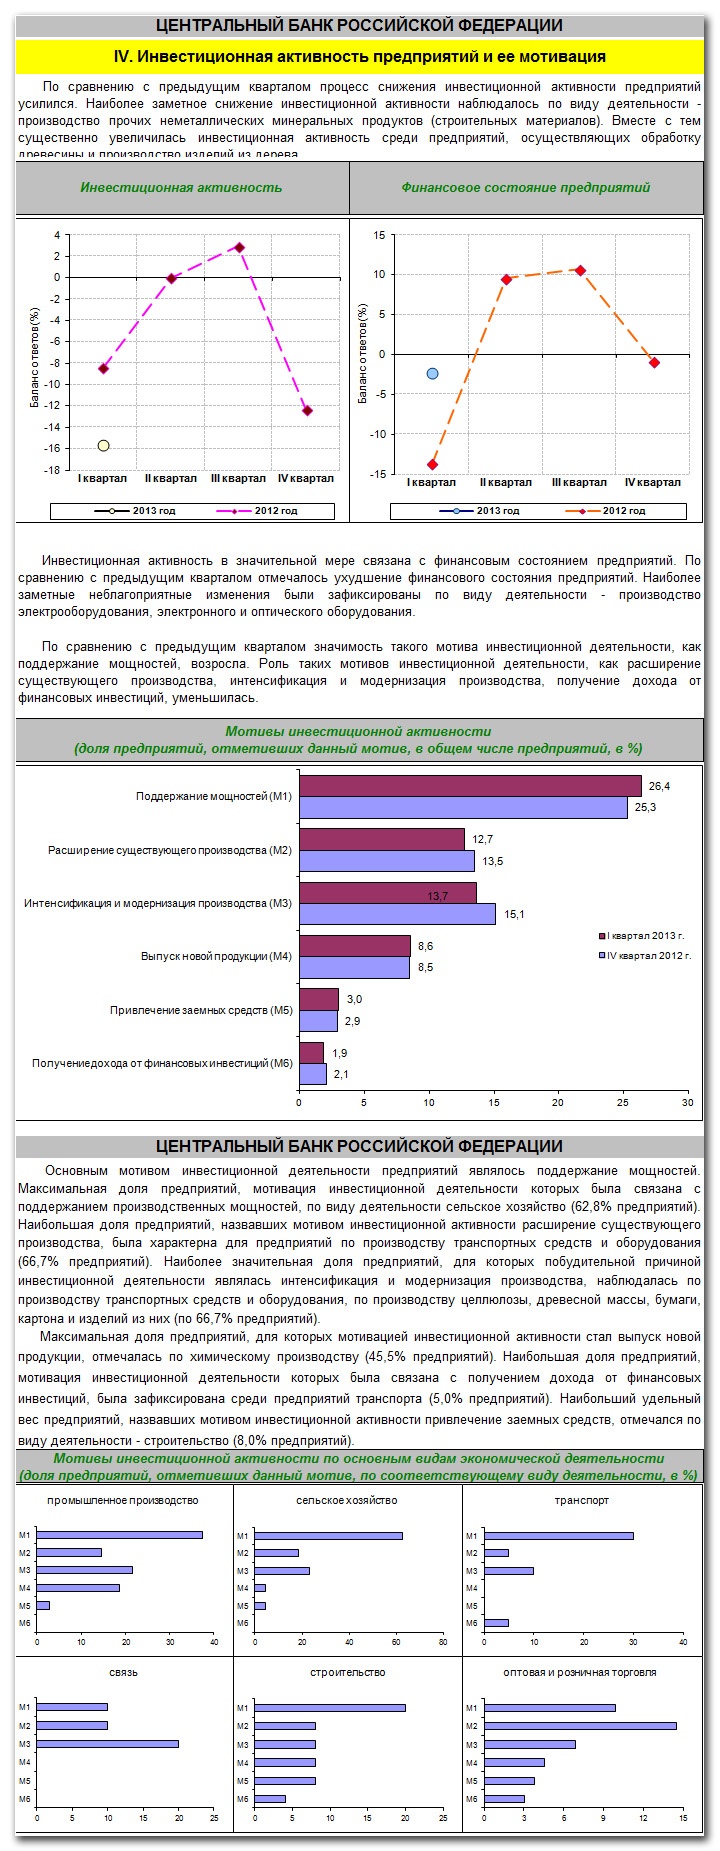 Doc22.ru Главное Управление Центробанка РФ по Алтайскому краю опубликовало очередной инвестиционный обзор по итогам 1 квартала 2013 года. В опросе, проведенном ГУ ЦБ с целью оценки ситуации в инвестиционной сфере экономики за 3 месяца этого года, приняли участие 473 предприятия различных отраслей региональной экономики.